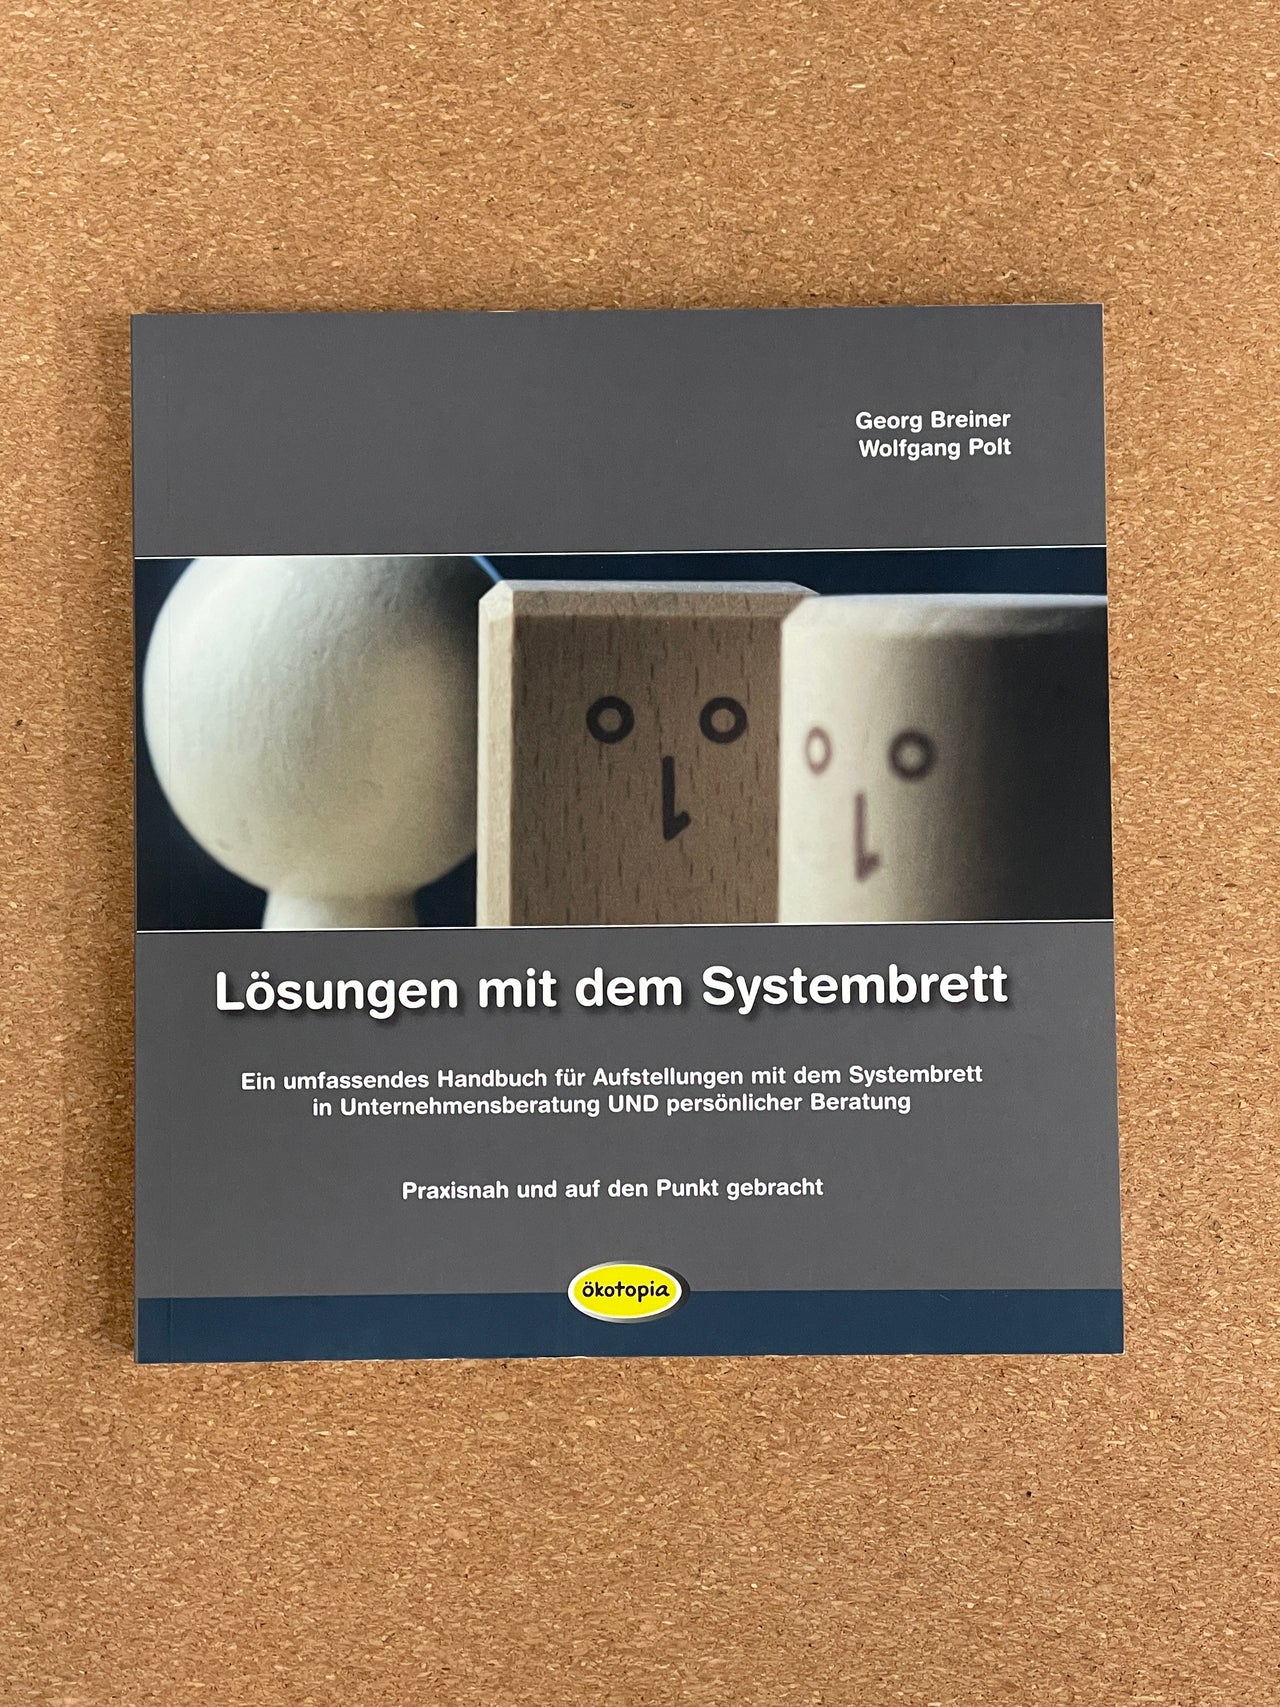 Lösungen mit dem Systembrett - Ein umfassendes Handbuch für Aufstellungen mit dem Systembrett